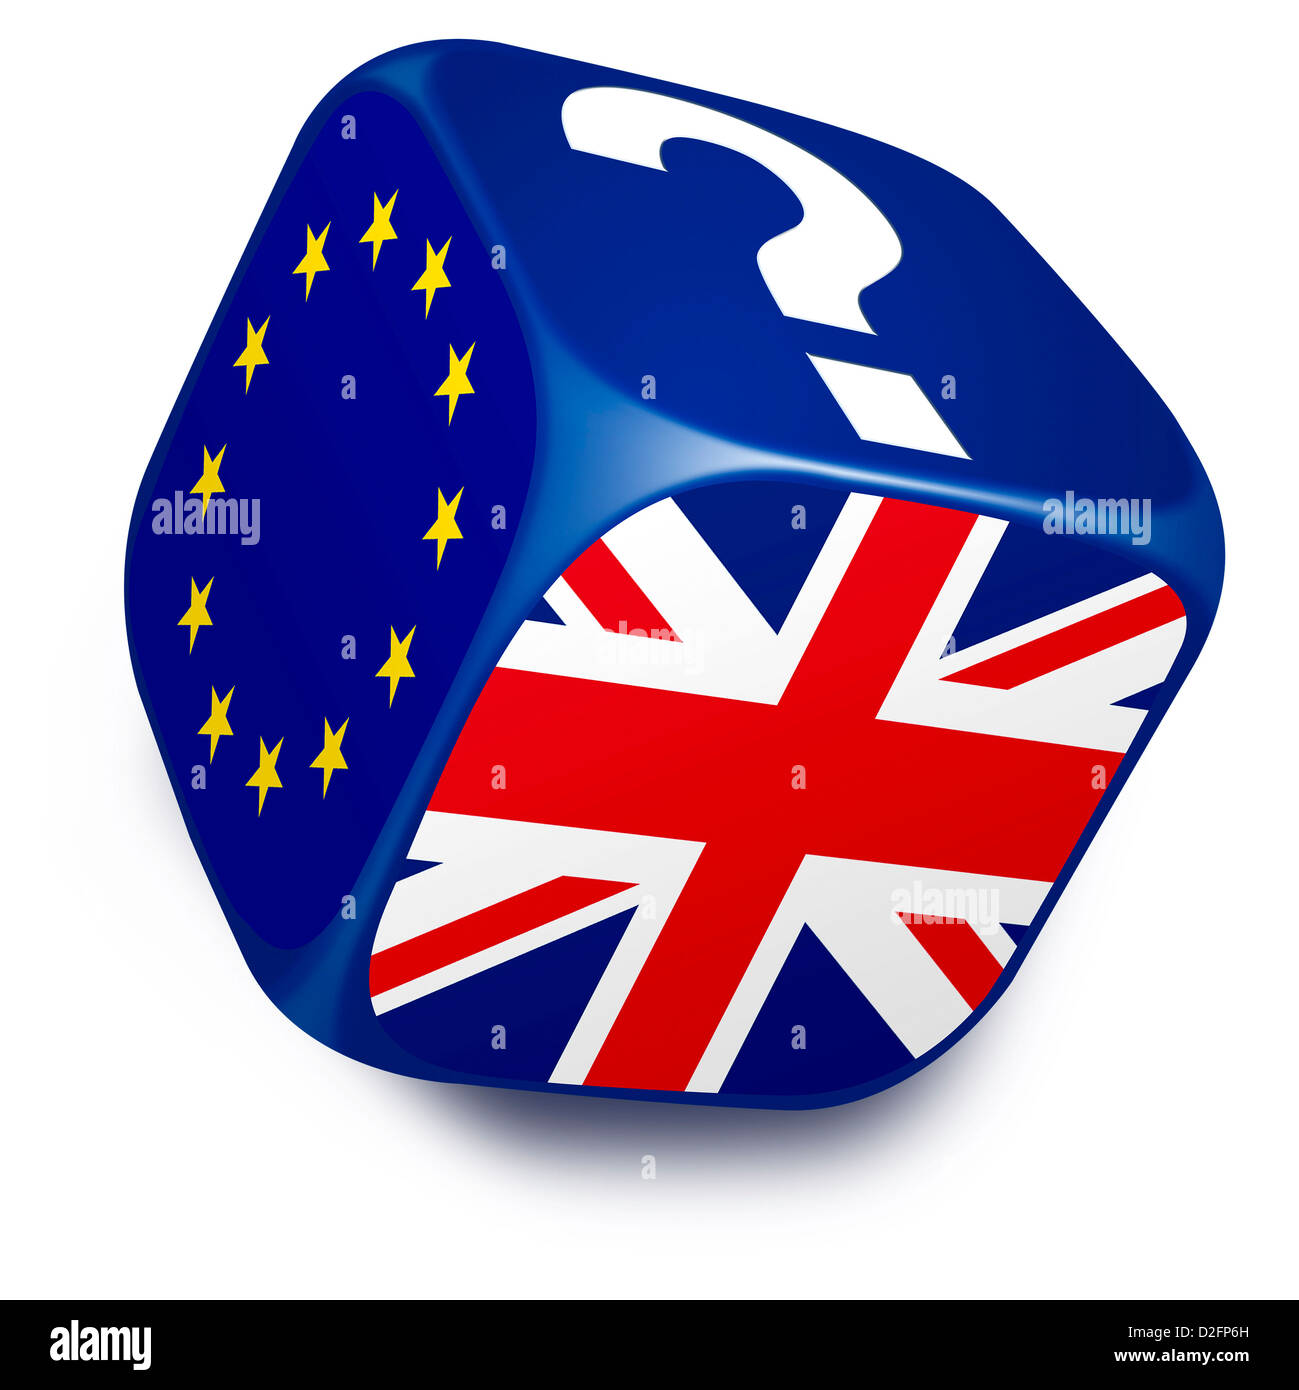 Los dados con la bandera de la Unión Europea, Reino Unido bandera y un signo de interrogación sobre uno de sus lados - Brexit negociaciones, negociación concepto new deal Foto de stock